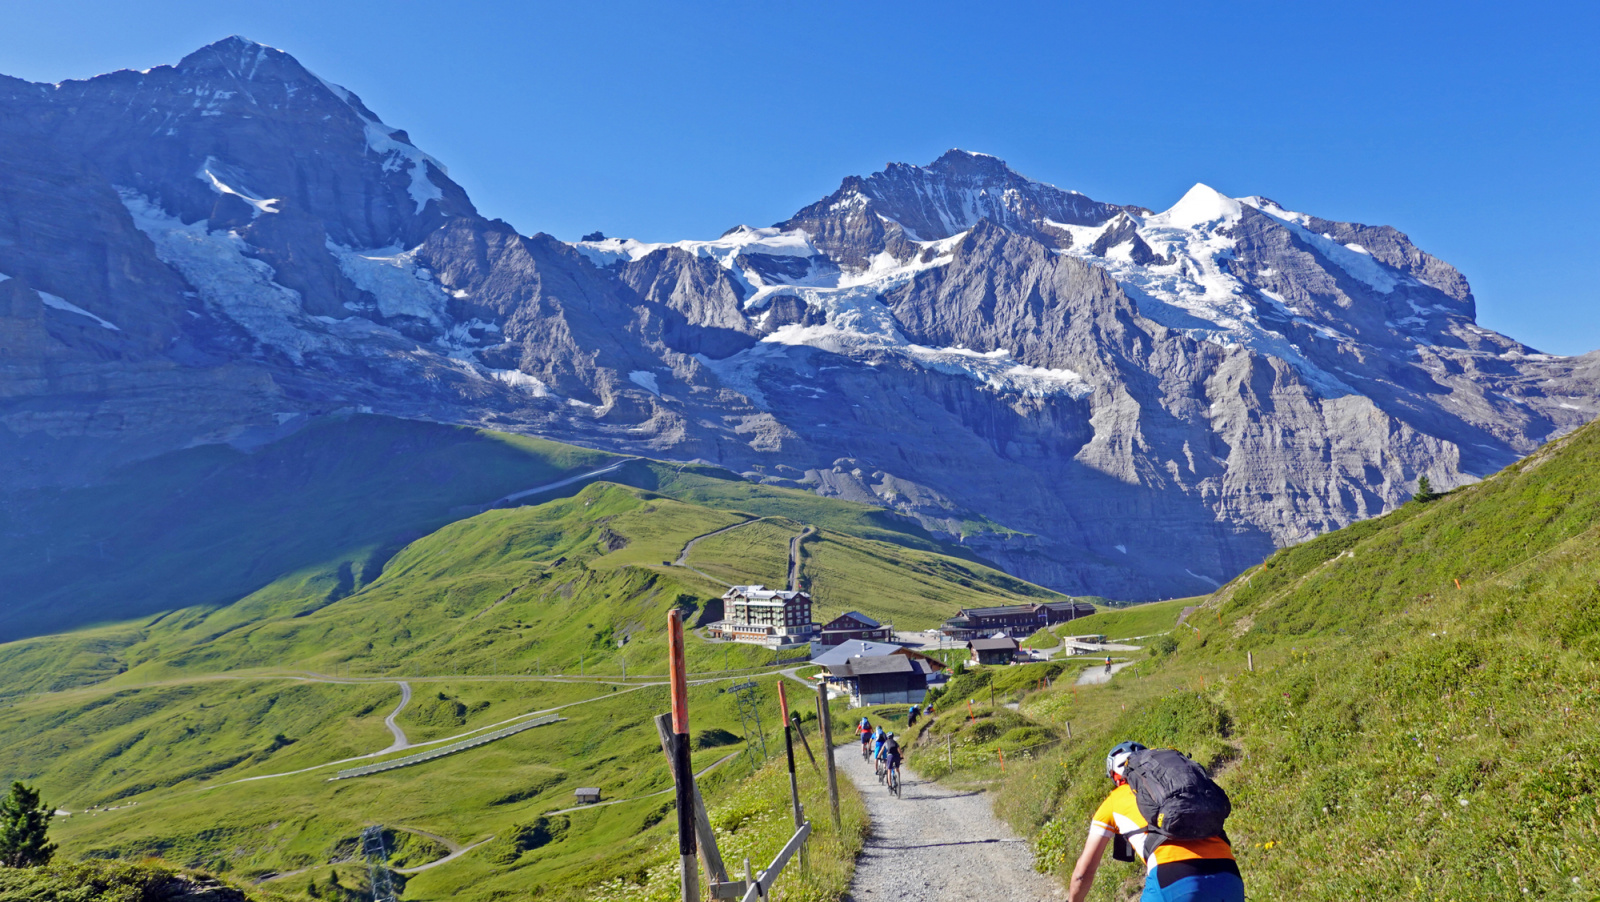 Eiger, Mönch & Jungfrau Hüttentour, Juli 2022 - 3 Tage Eiger, Mönch & Jungfrau Tour